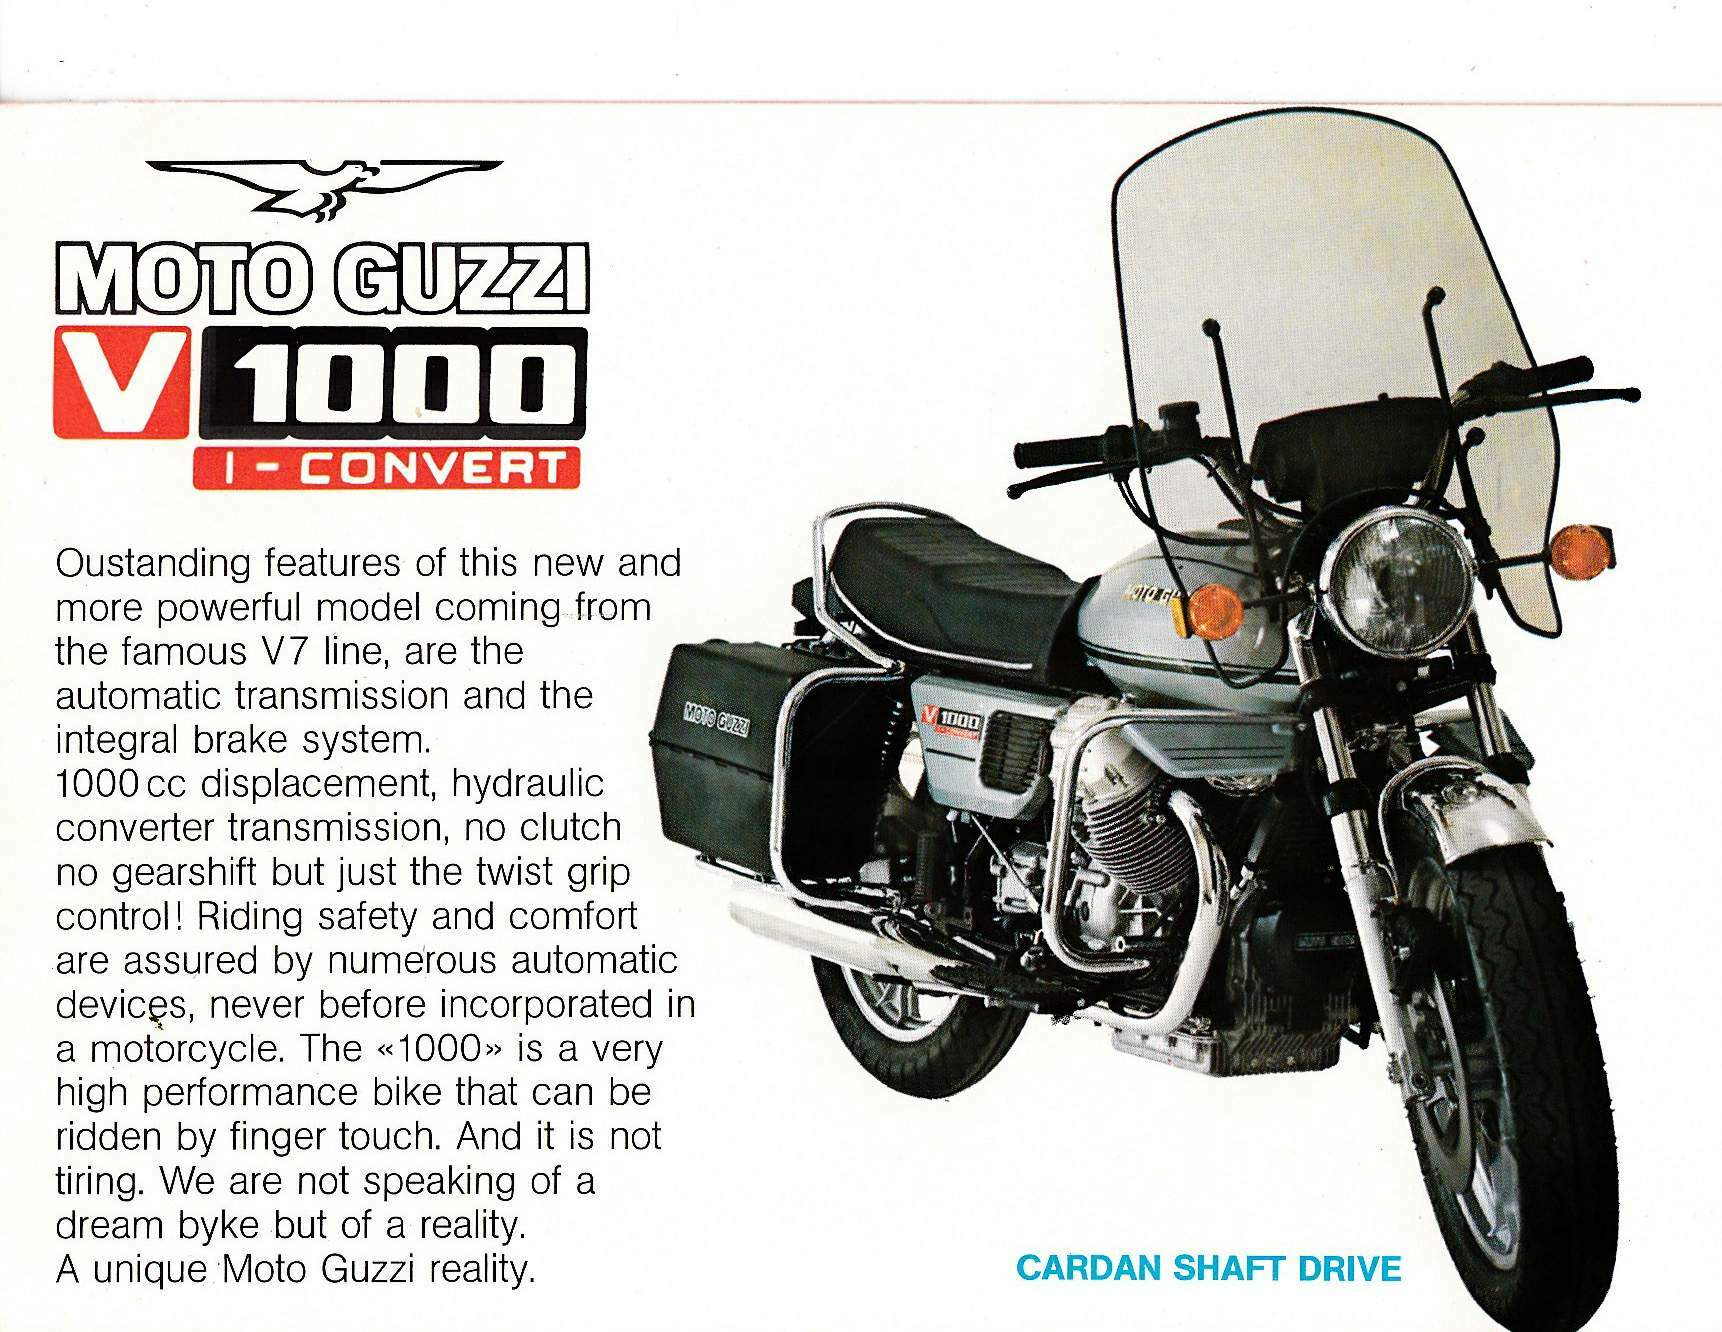 Moto Guzzi V1000 I Convert 3